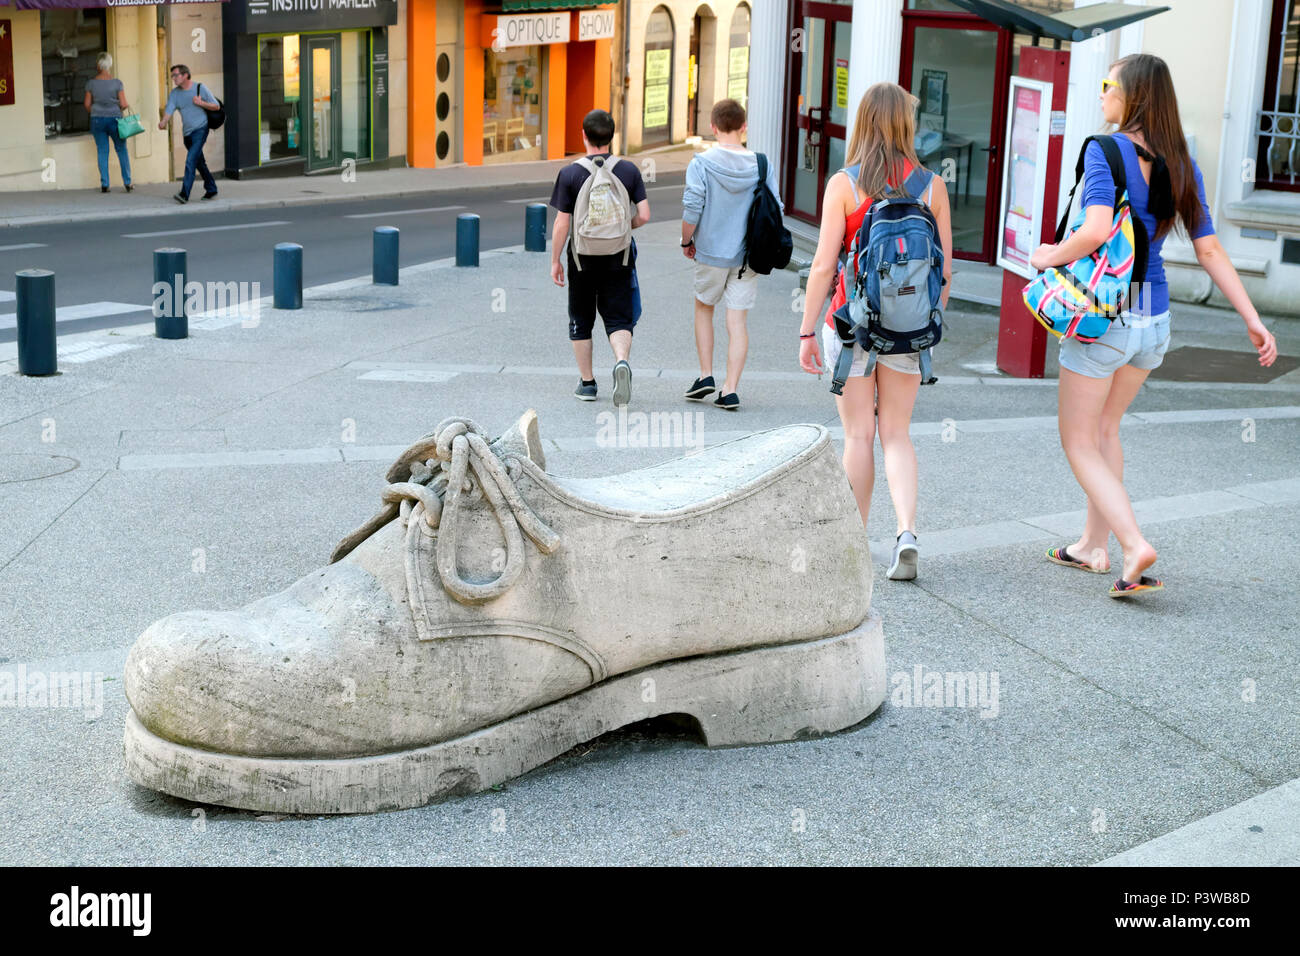 Shoe sculpture, Place Charles de Gaulle, Romans-sur-Isère, Drôme, France, Europe Stock Photo